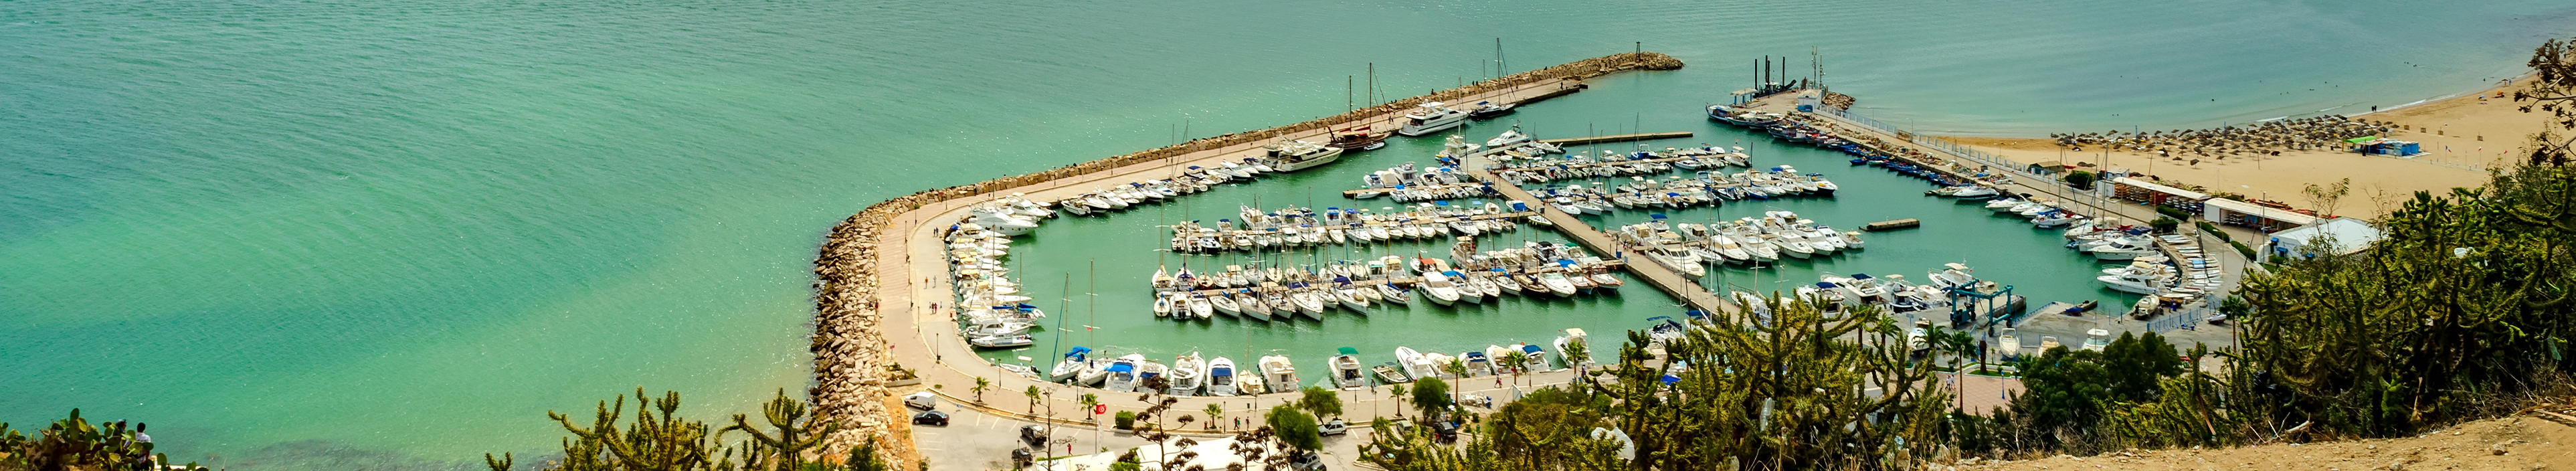 Panorama des Hafens von Sidi Bou Said in Tunesien